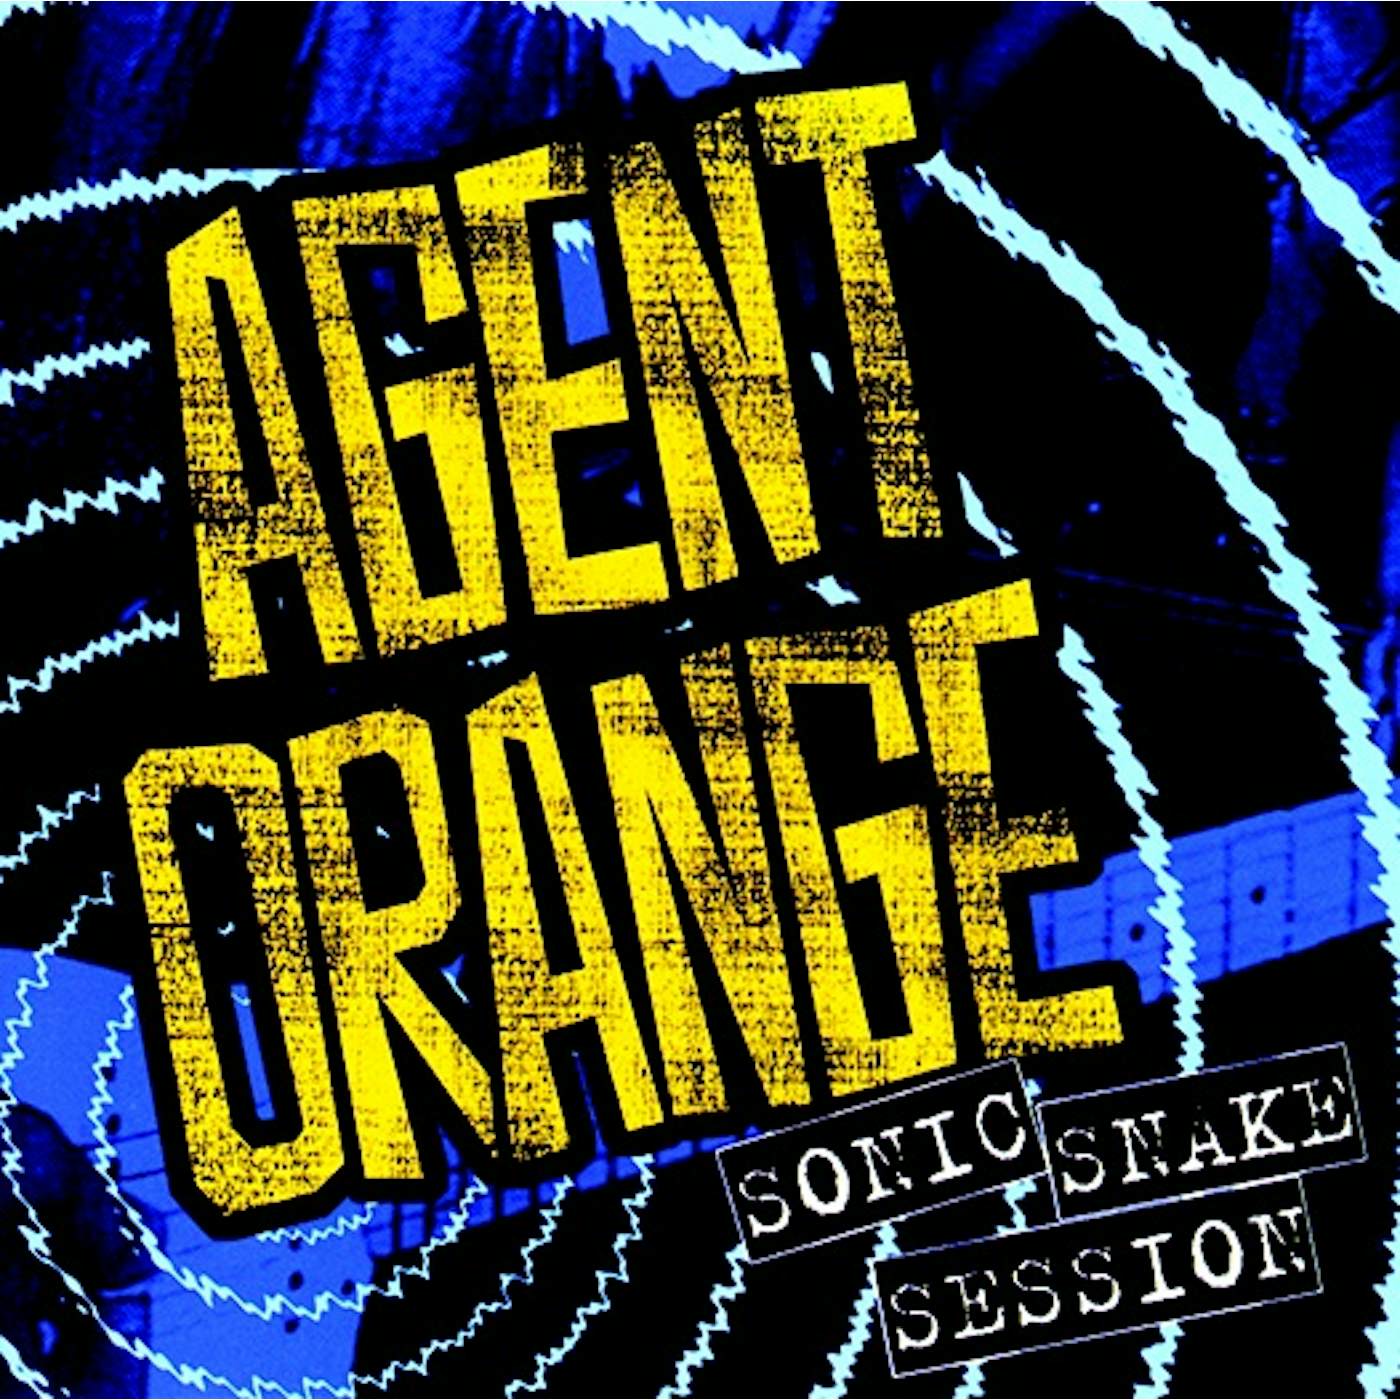 Agent Orange SONIC SNAKE SESSION (2 CD) (2016 REISSUE) CD